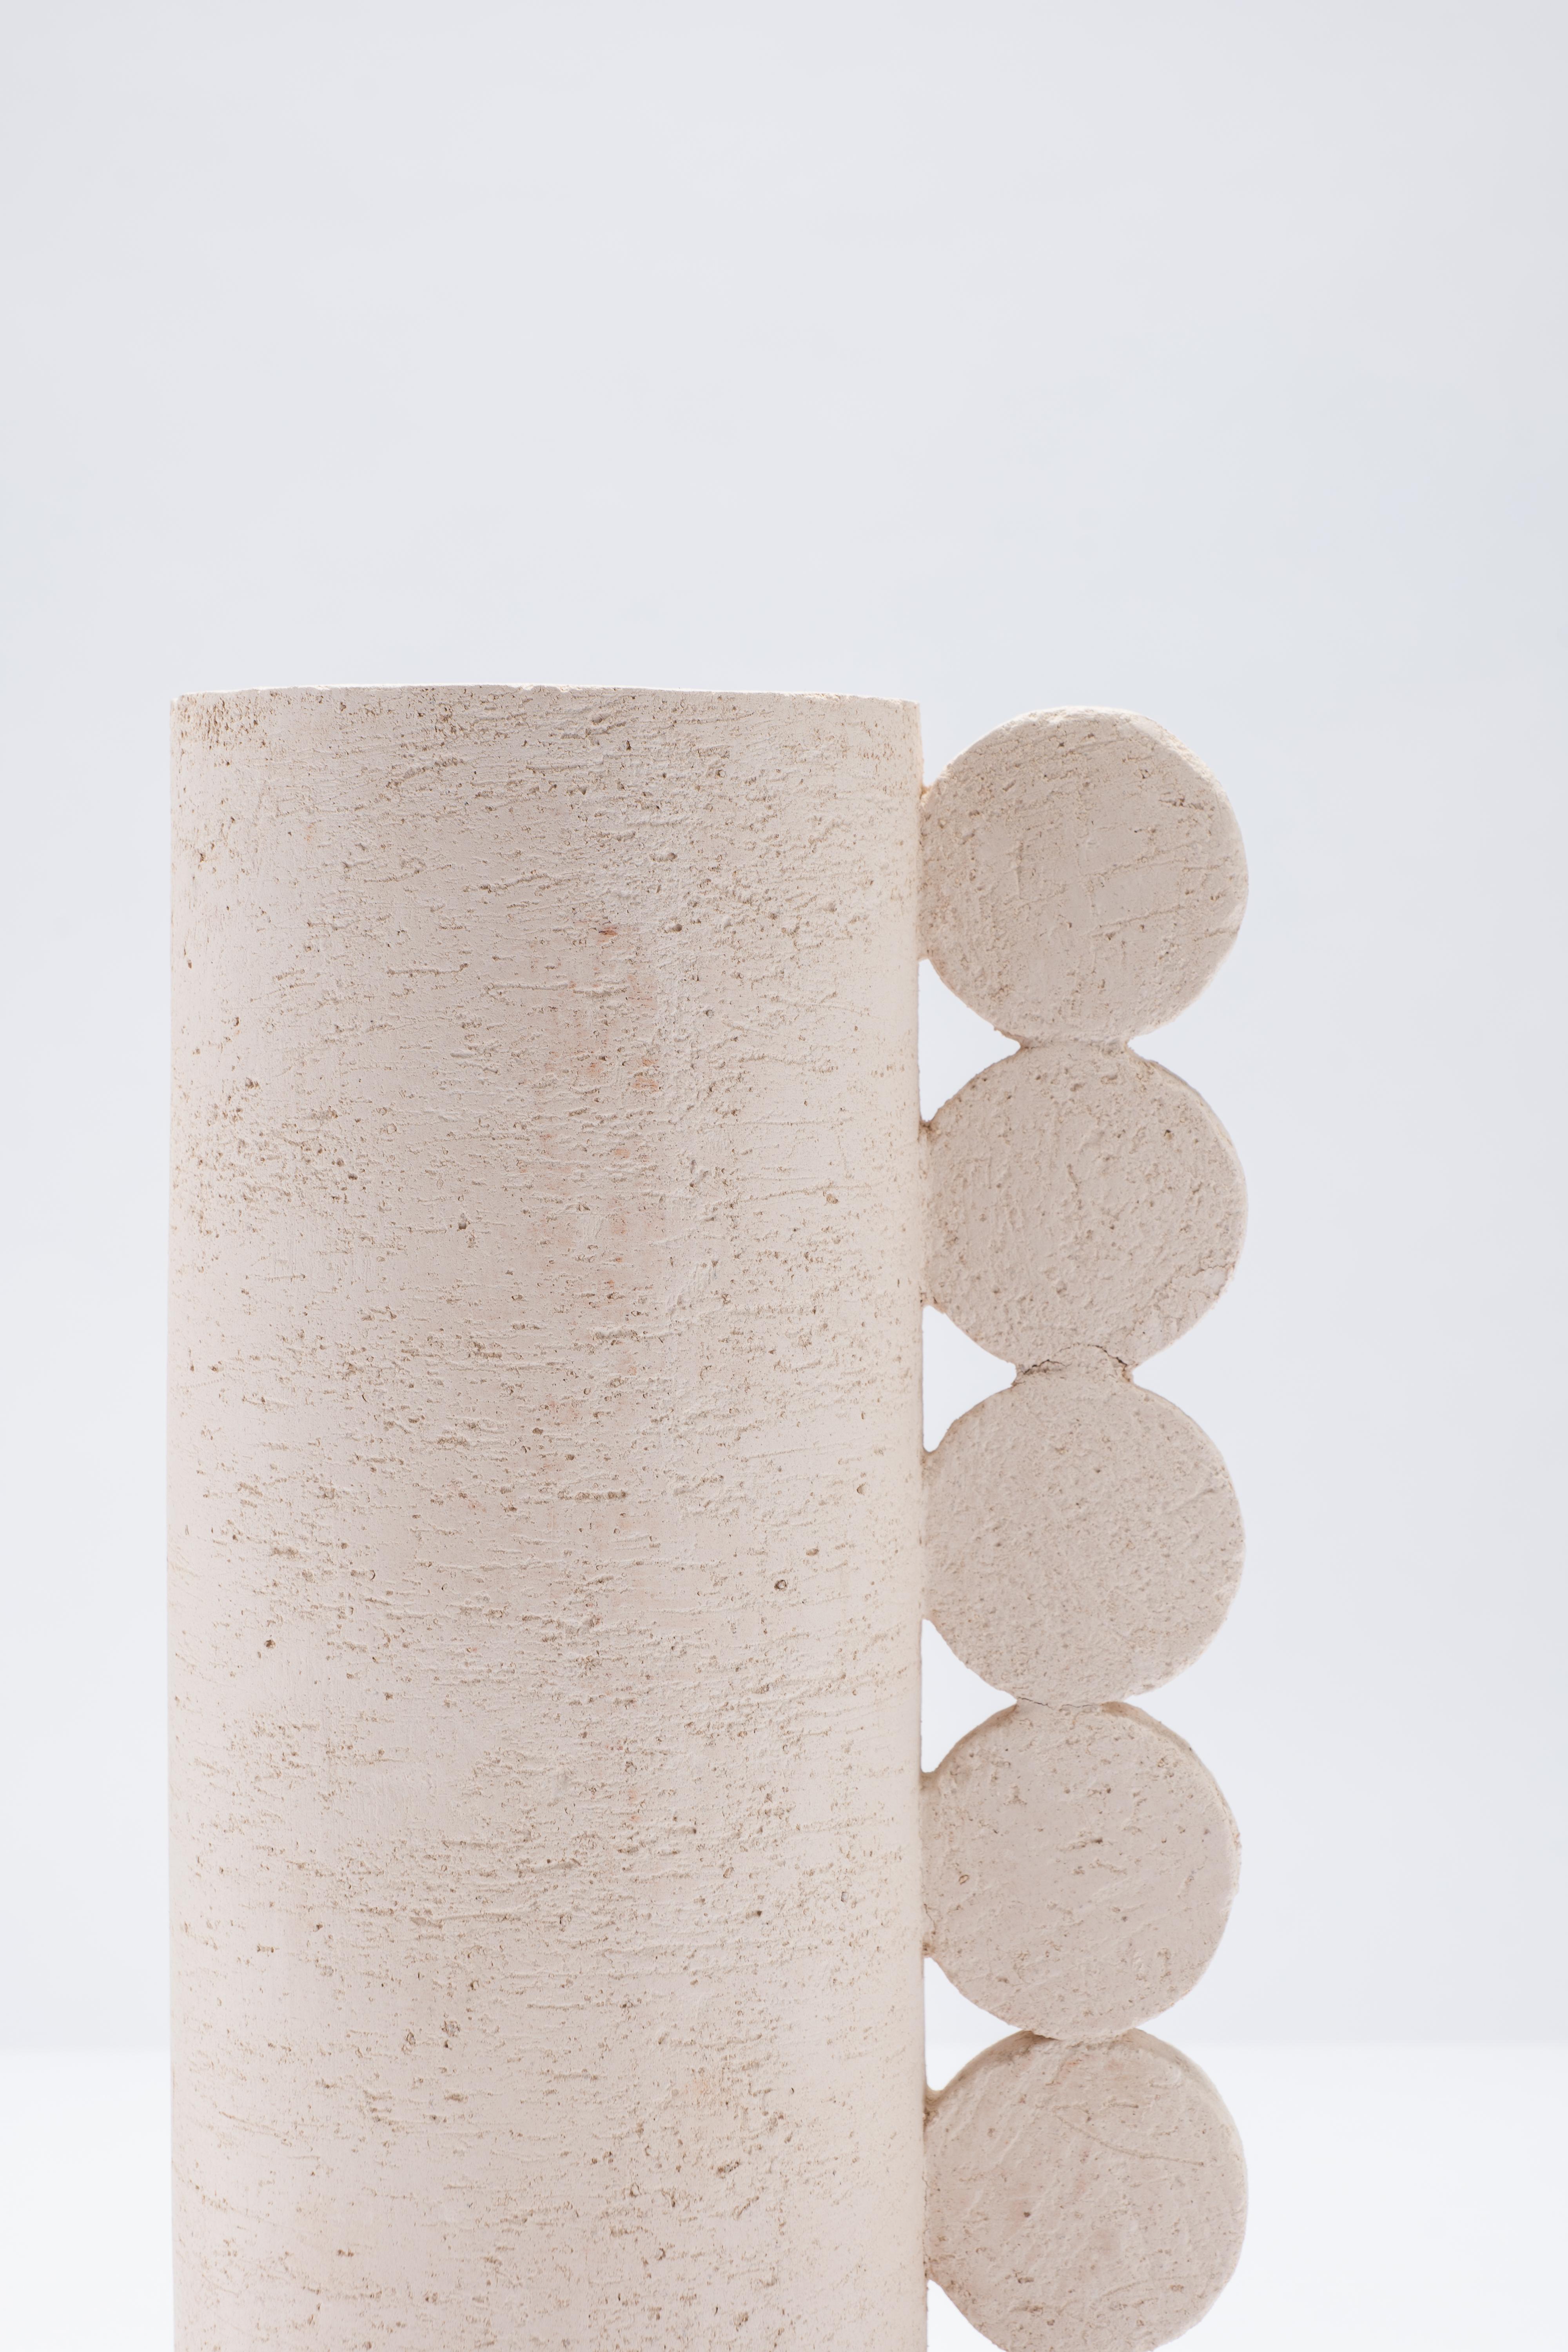 Terre cuite Vase contemporain CuoreCarpenito Terracotta White Collection Bibi Australe en vente